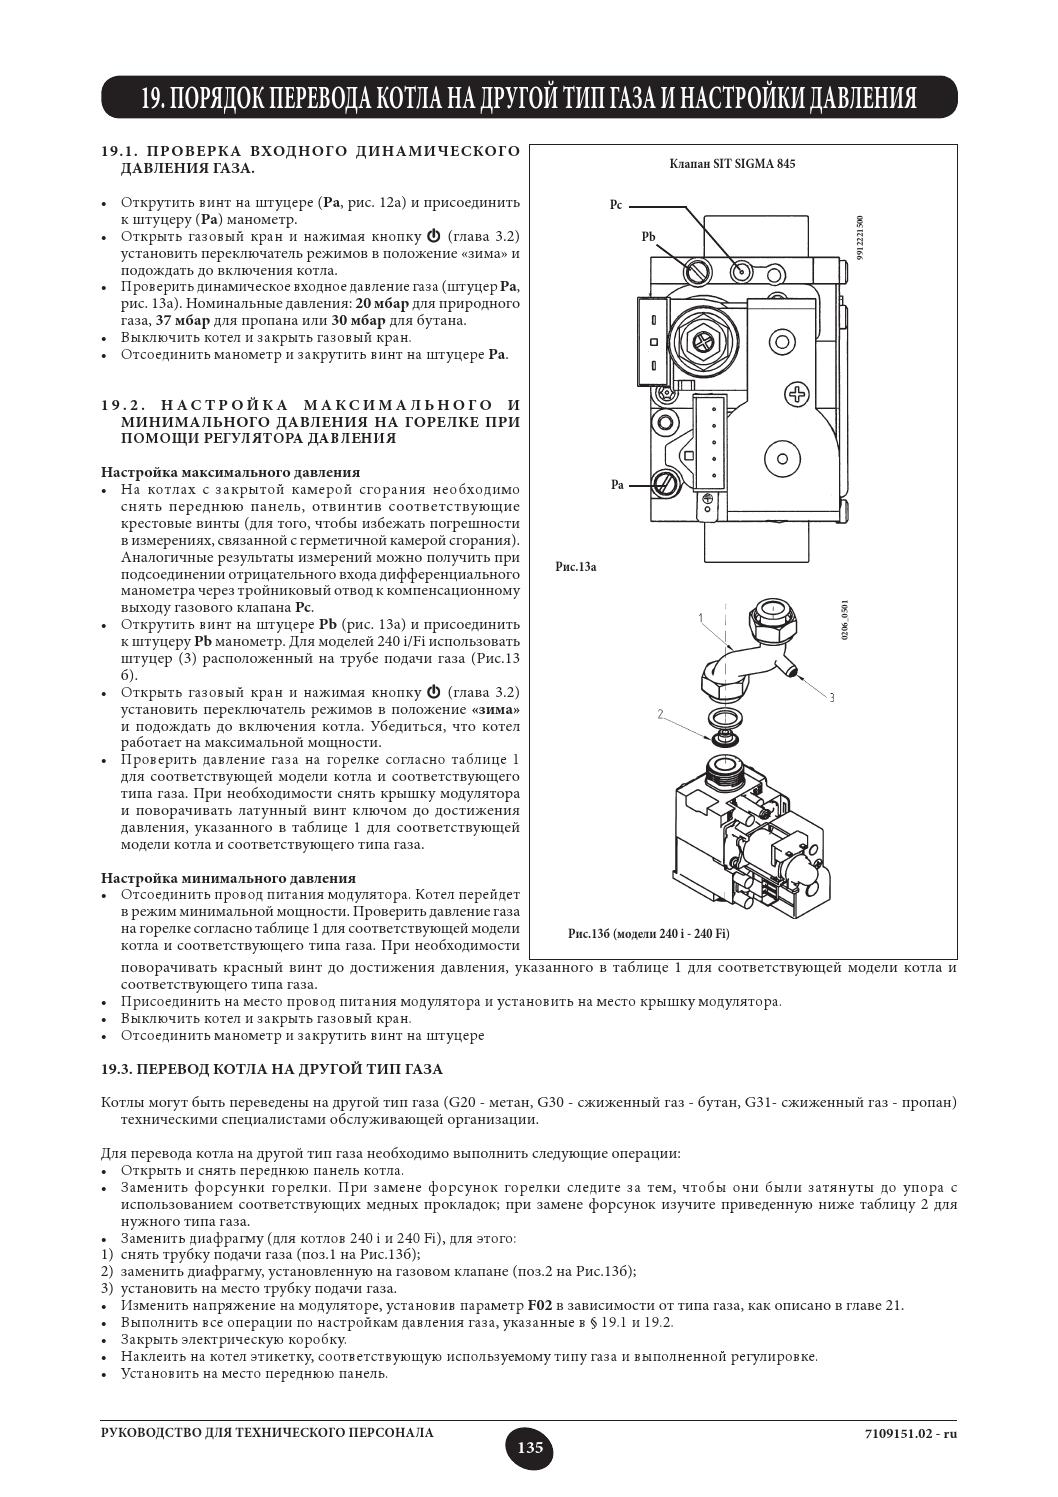 Как включить газовый котел: пошаговый инструктаж + правила безопасной эксплуатации